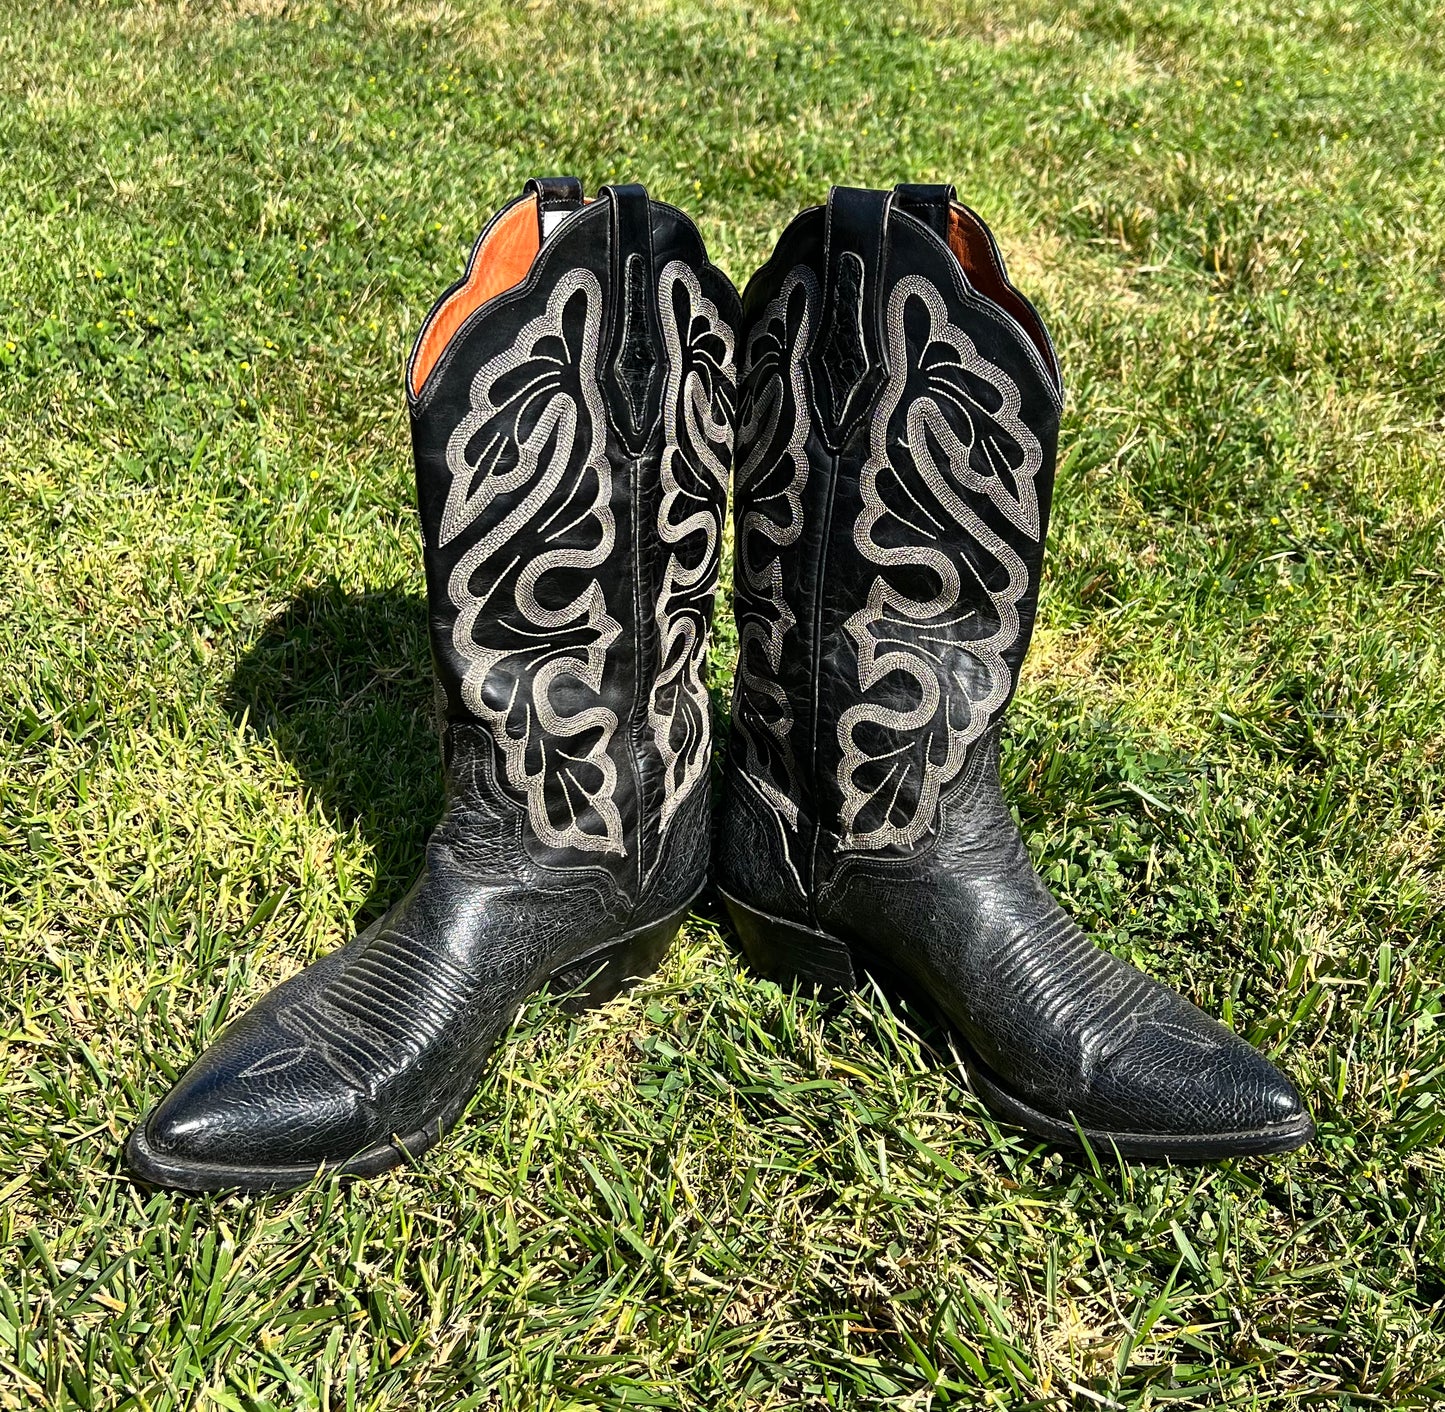 The El Dorado Handmade Cowboy Boots